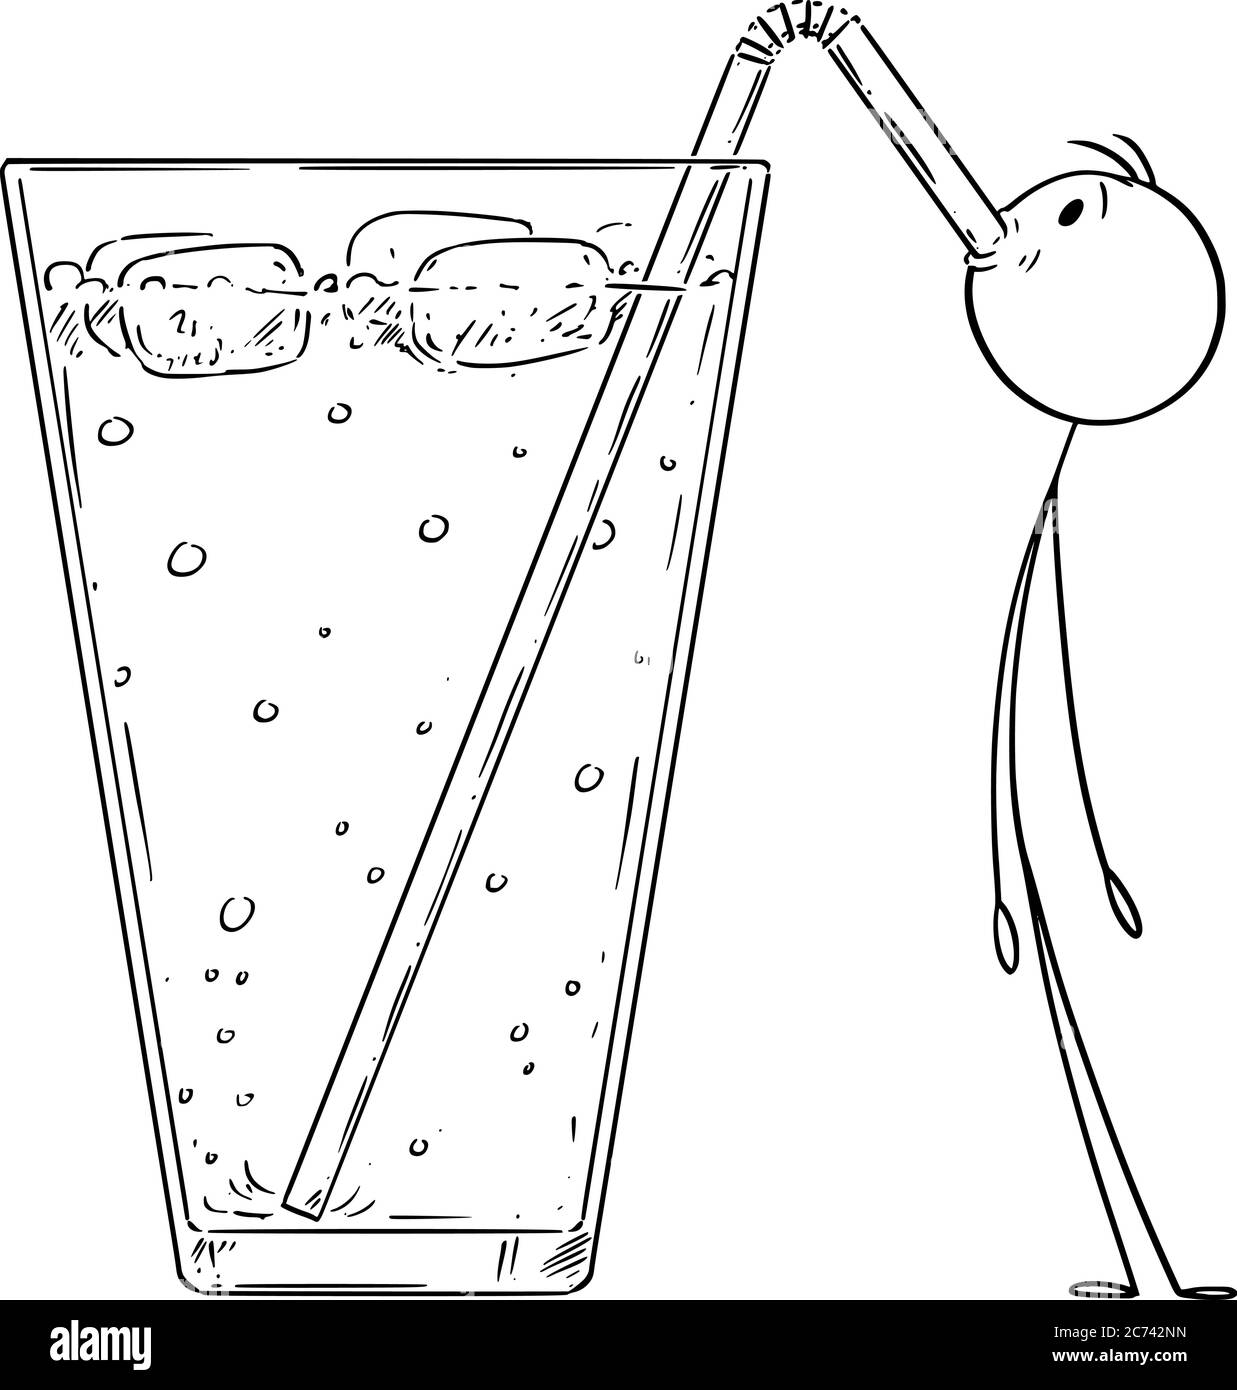 Dessin de dessin de dessin de dessin de dessin de dessin de dessin de dessin de petit homme boit de la limonade froide, cocktail ou boisson avec de la paille. Illustration de Vecteur